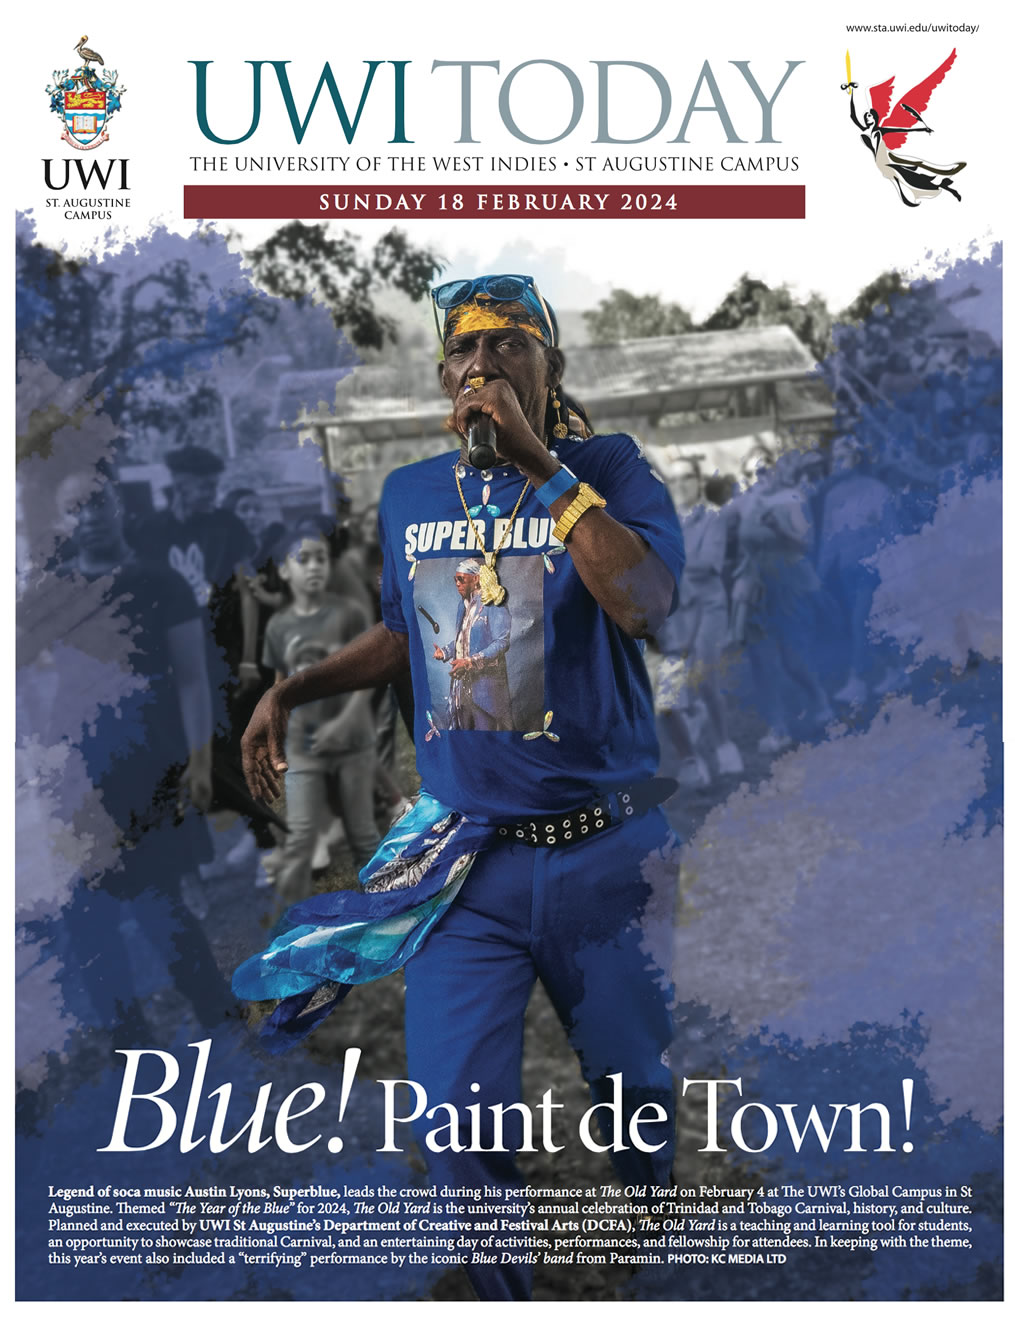 Blue! Paint de town!